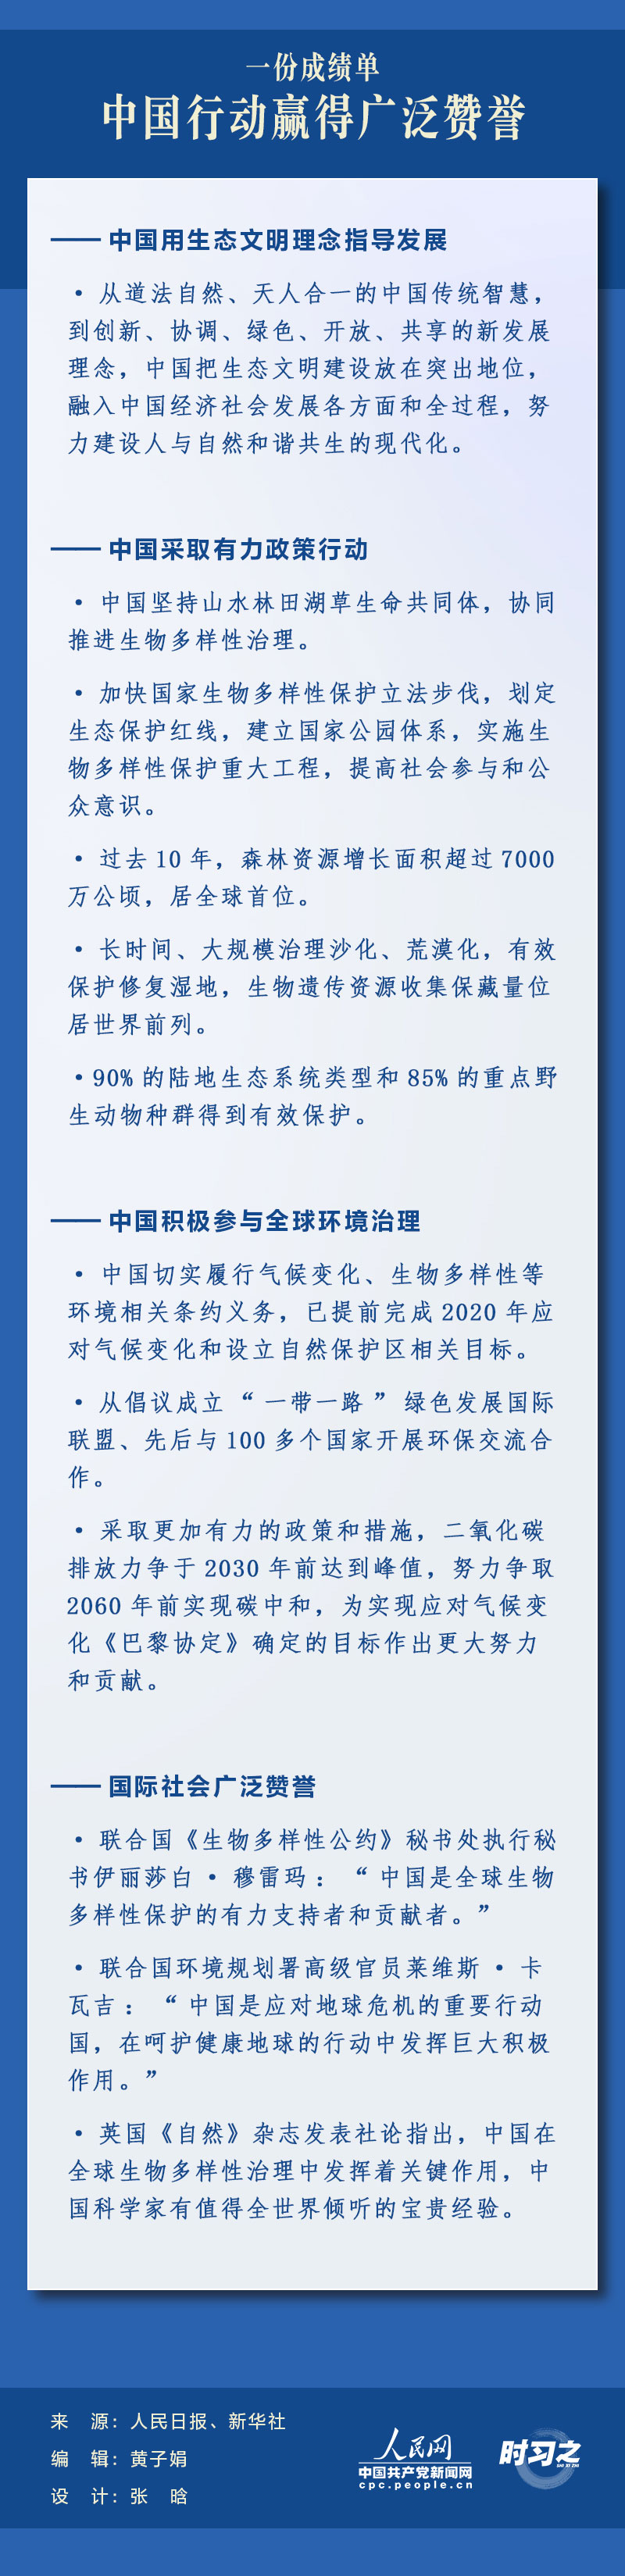 习近平提出中国方案4 人民网-中国共产党新闻网.jpg